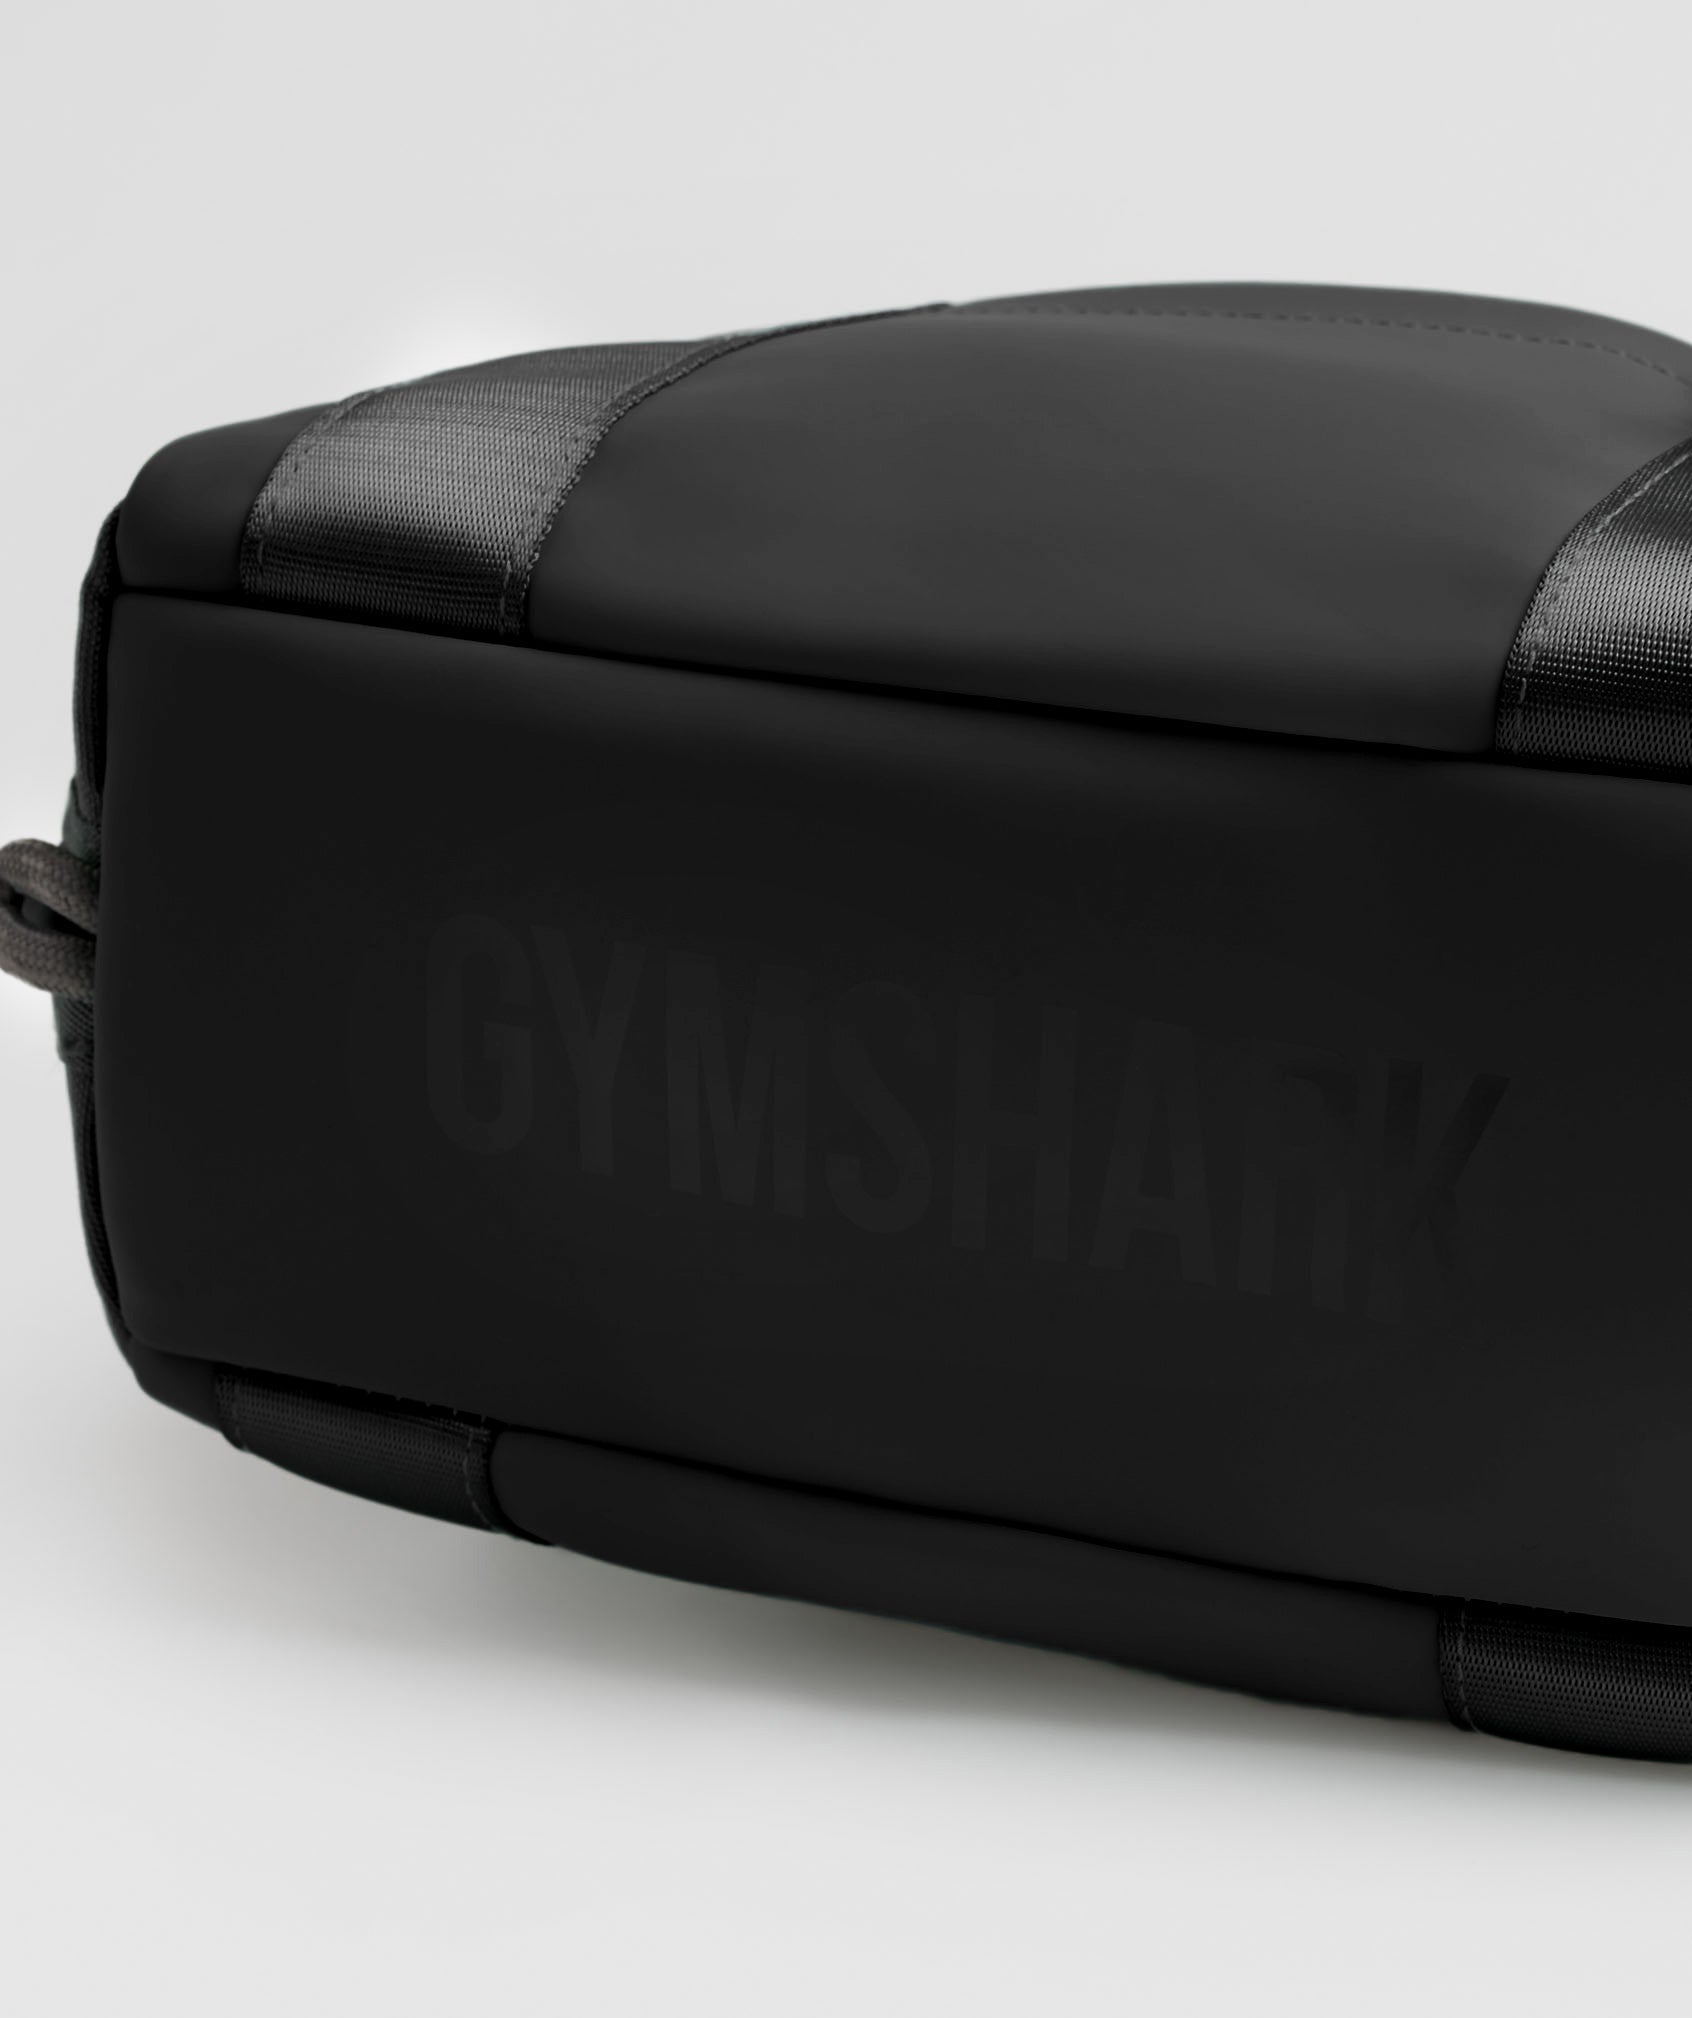 Gym shark mini black bookbag!! 🖤🖤 - Depop